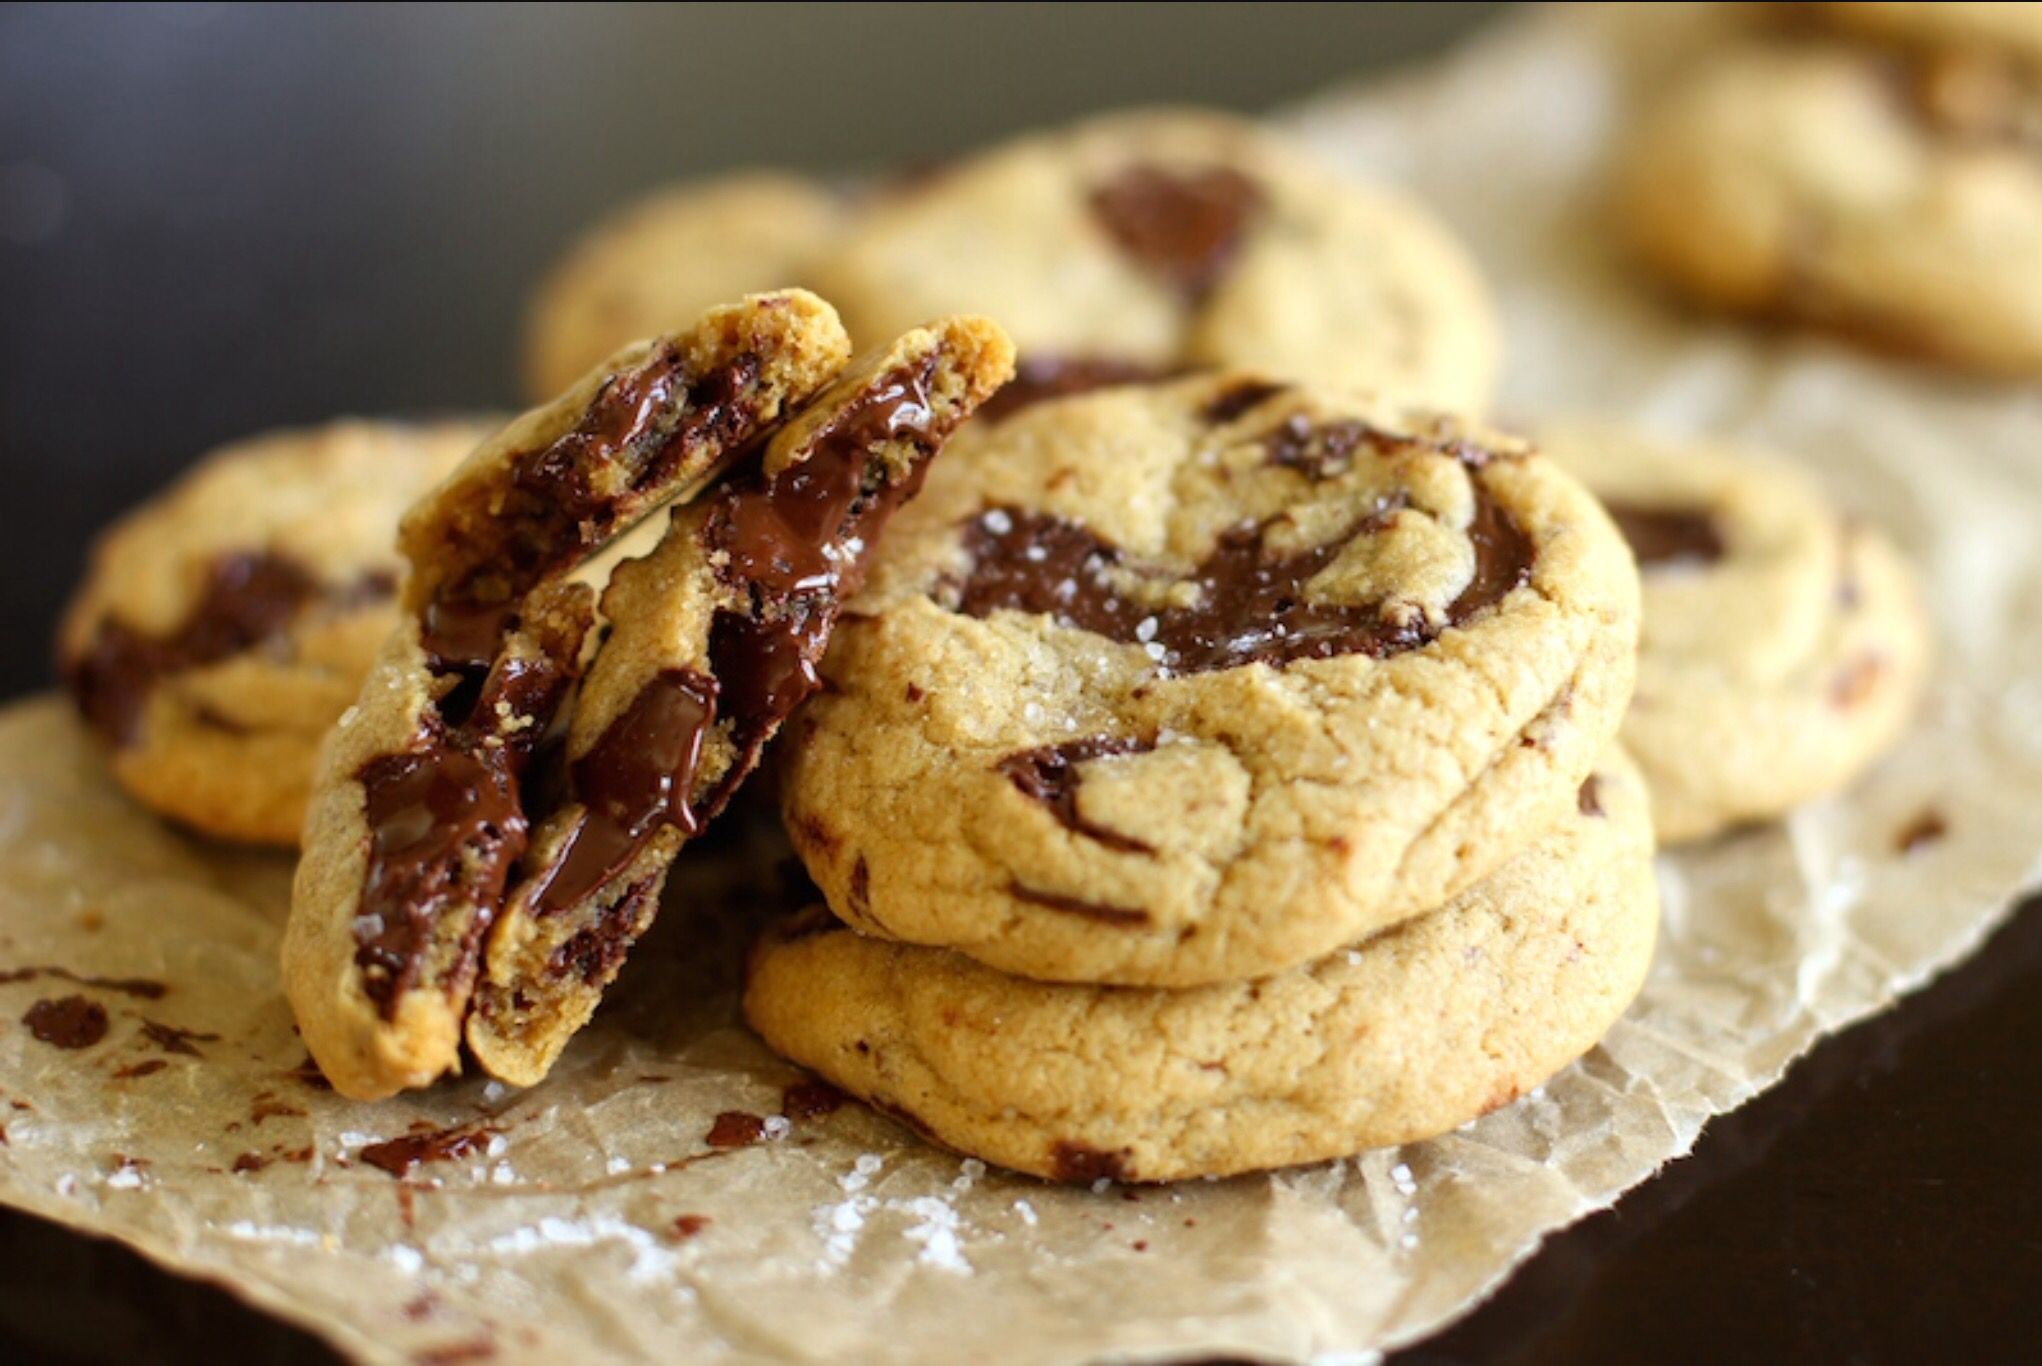 Content cookies. Американское шоколадное печенье кукис. Песочное печенье кукис. Печенье Американ кукис с шоколадом. Американское песочное печенье.